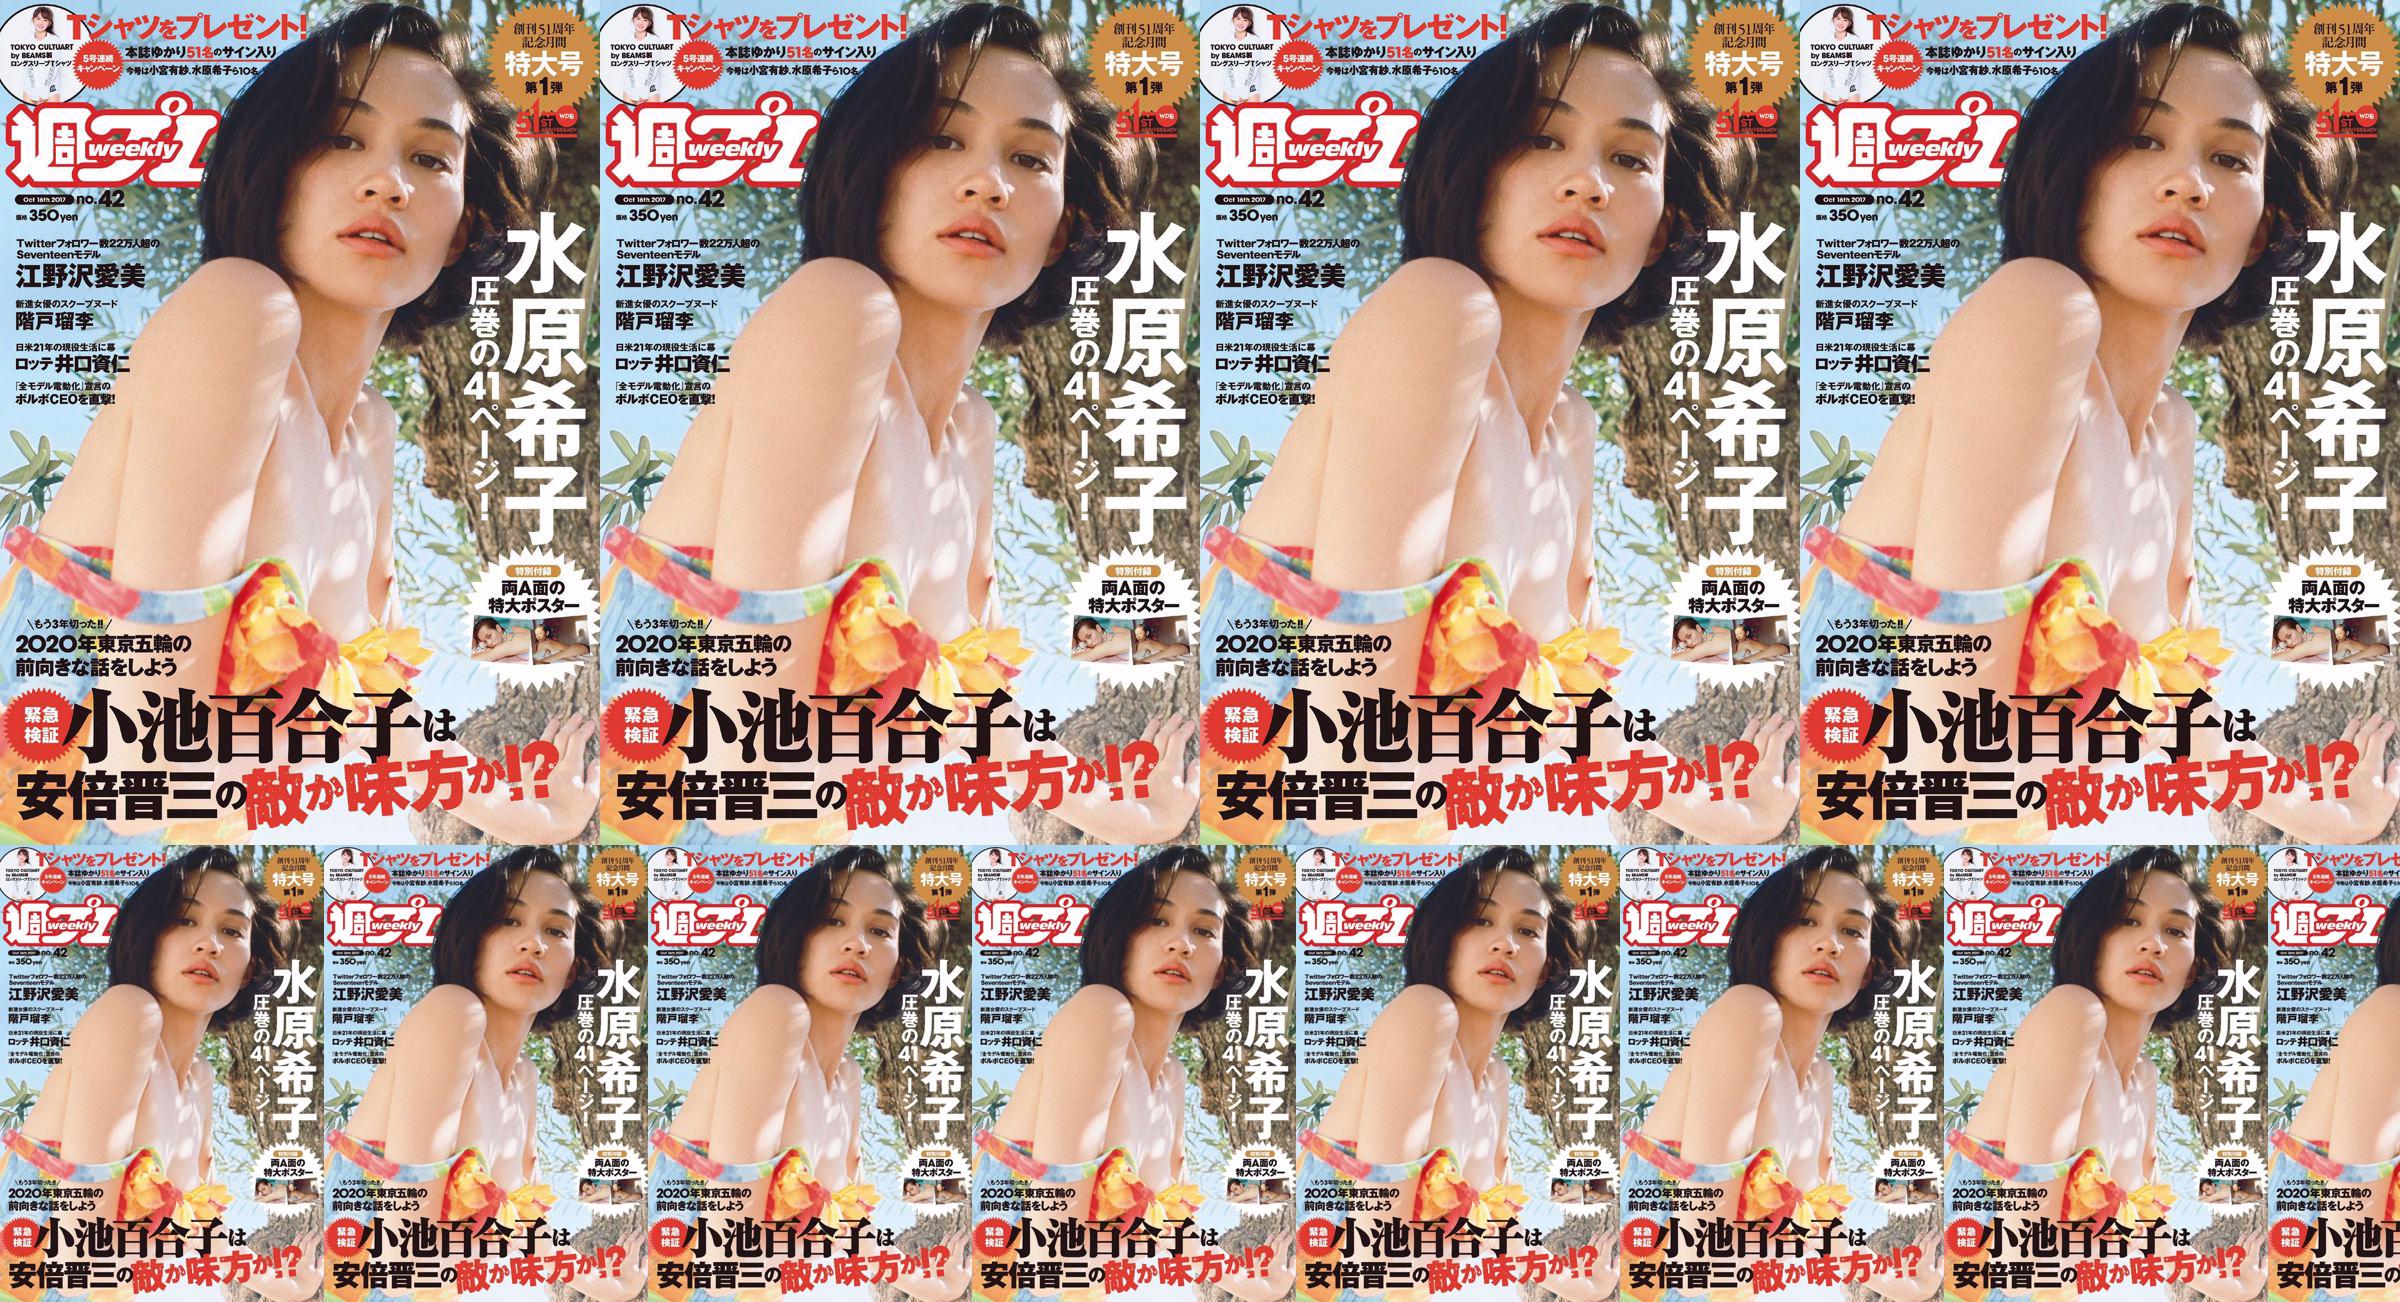 Kiko Mizuhara Manami Enosawa Serina Fukui Miu Nakamura Ruri Shinato [Weekly Playboy] 2017 No.42 Photo Magazine No.e983a5 Pagina 7